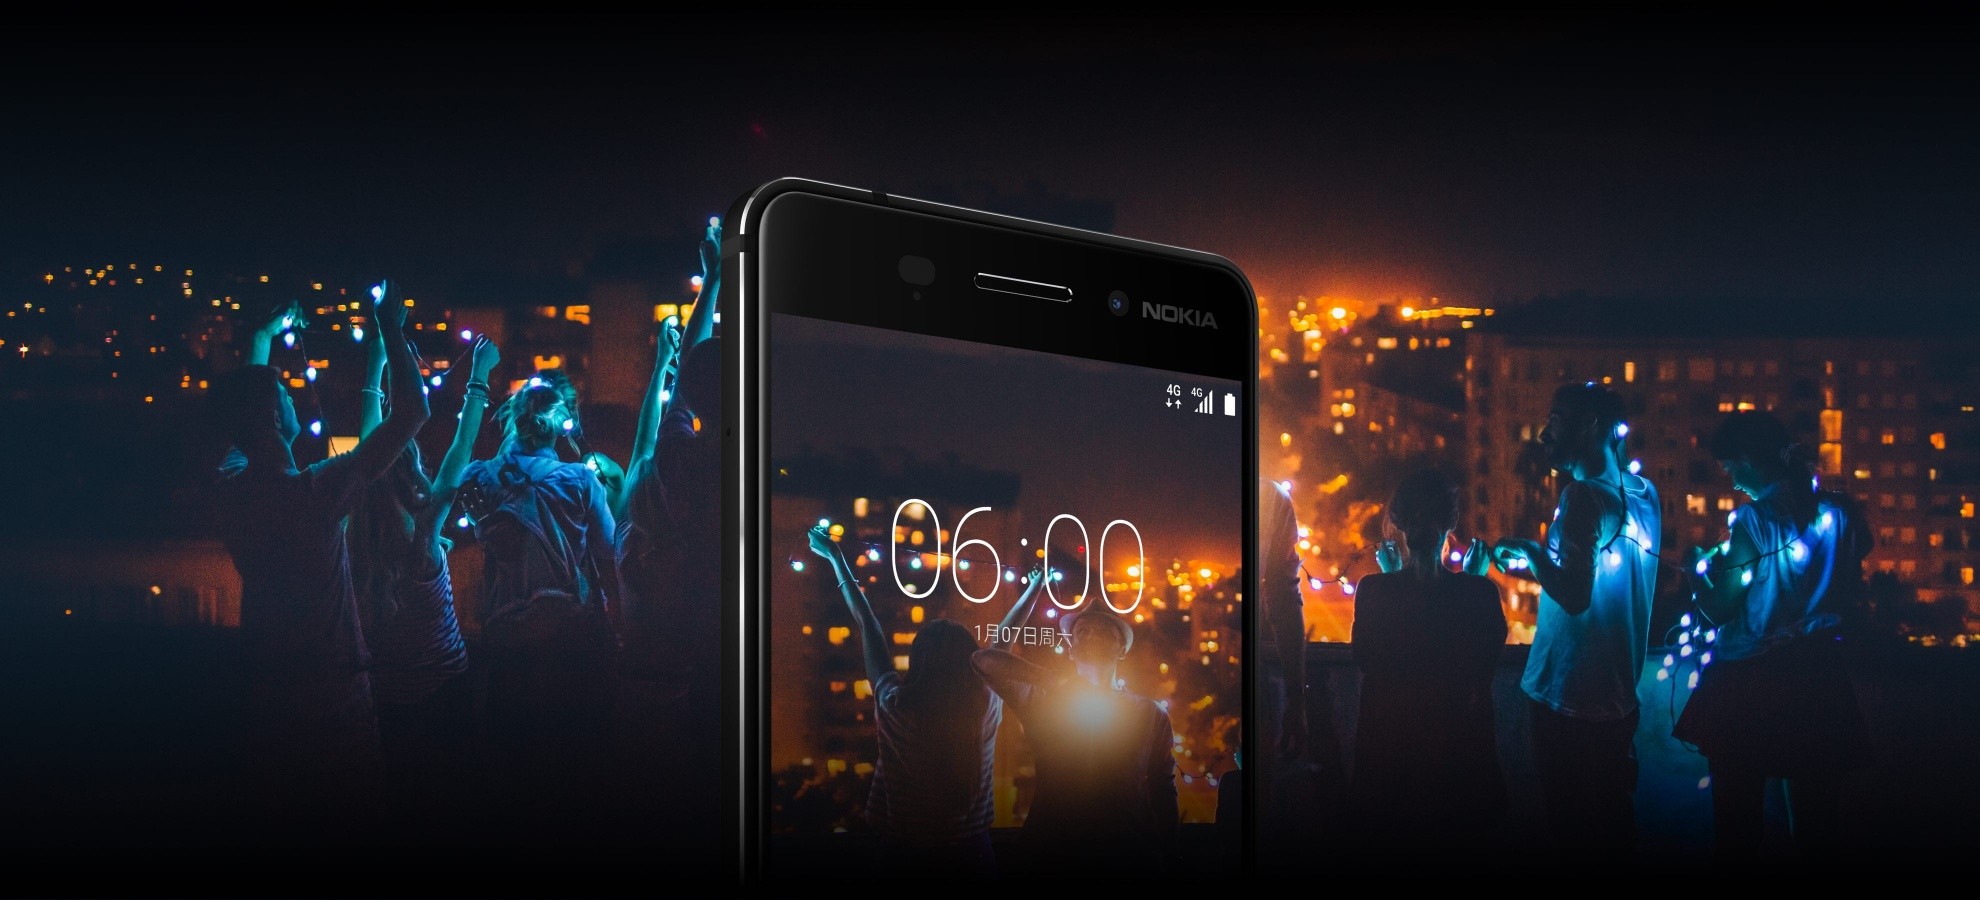 Teléfono Android Nokia 6 anunciado en China, aquí está el precio y la hoja de especificaciones completa